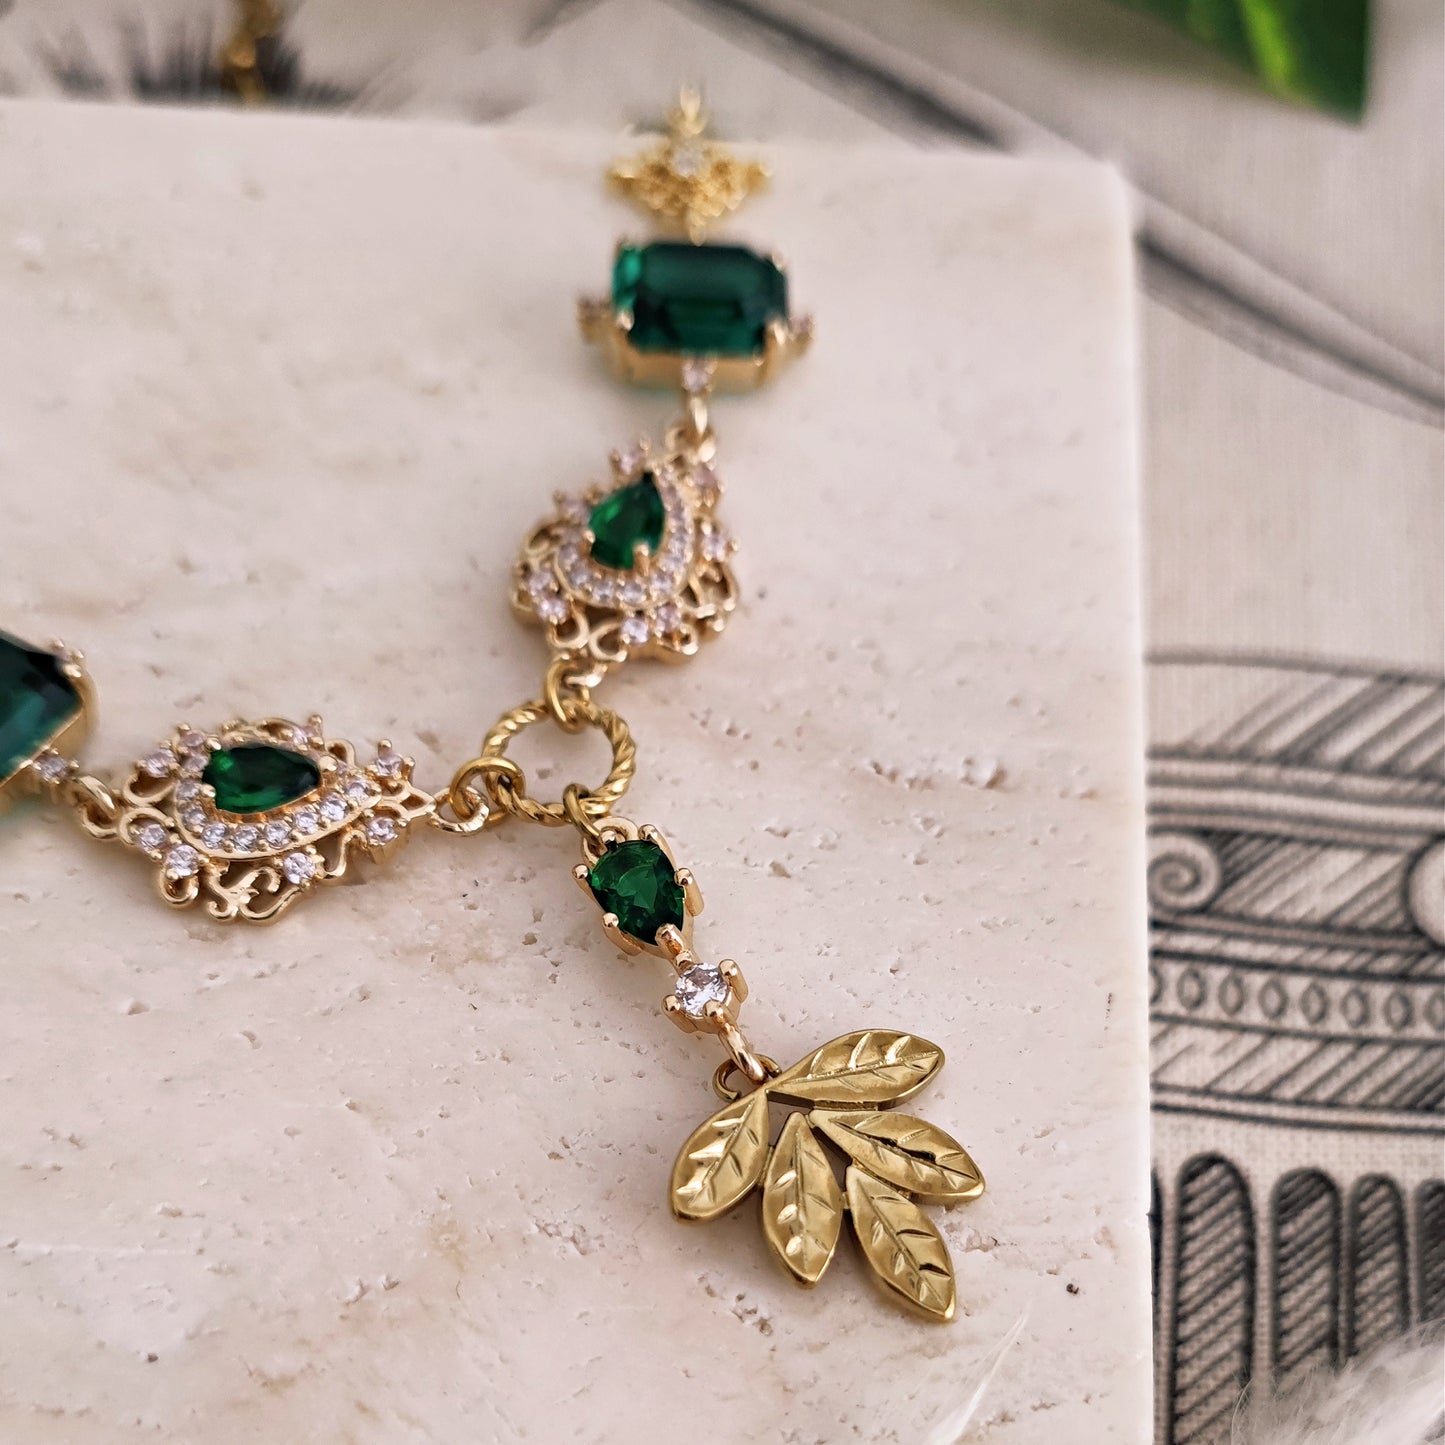 Choker necklace "Demeter" emerald green